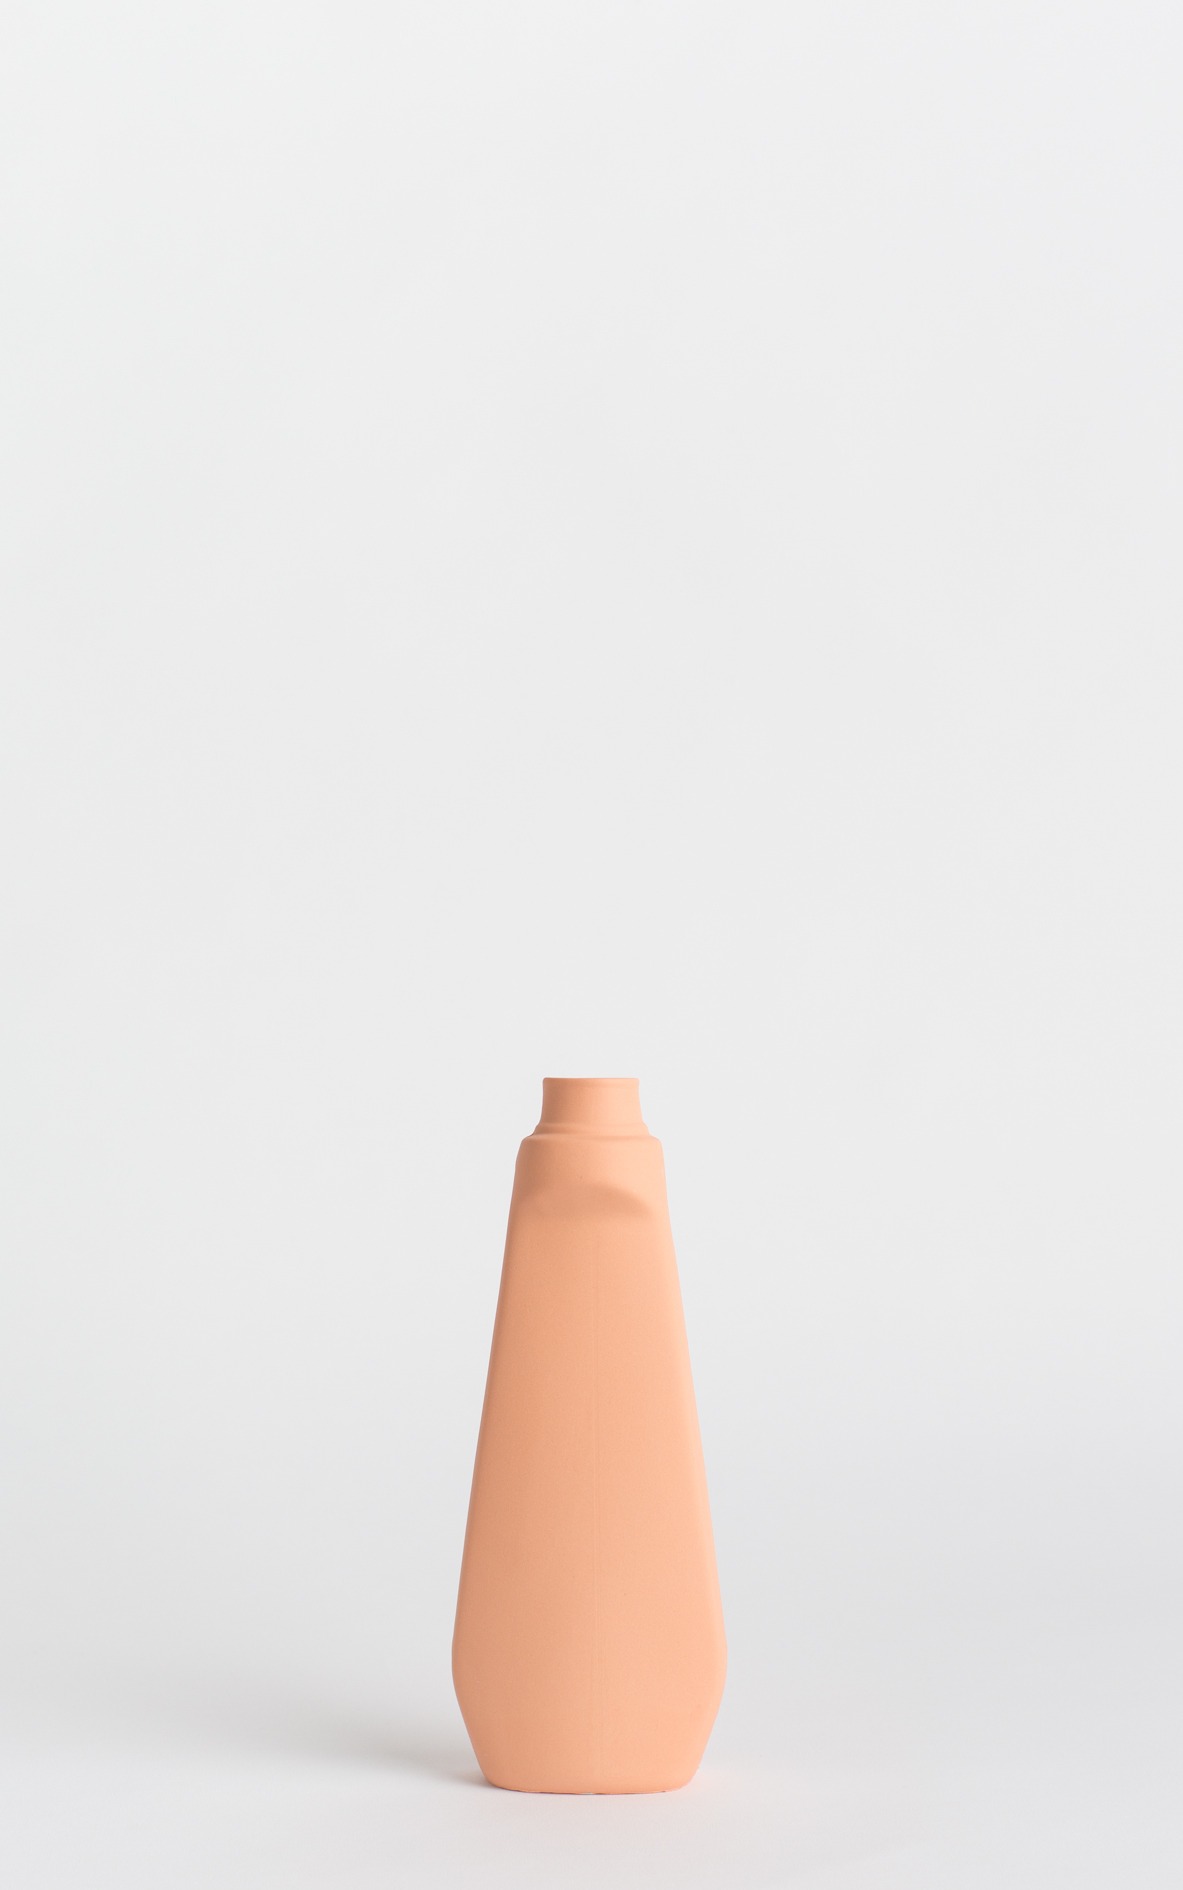 bottle vase #4 orange